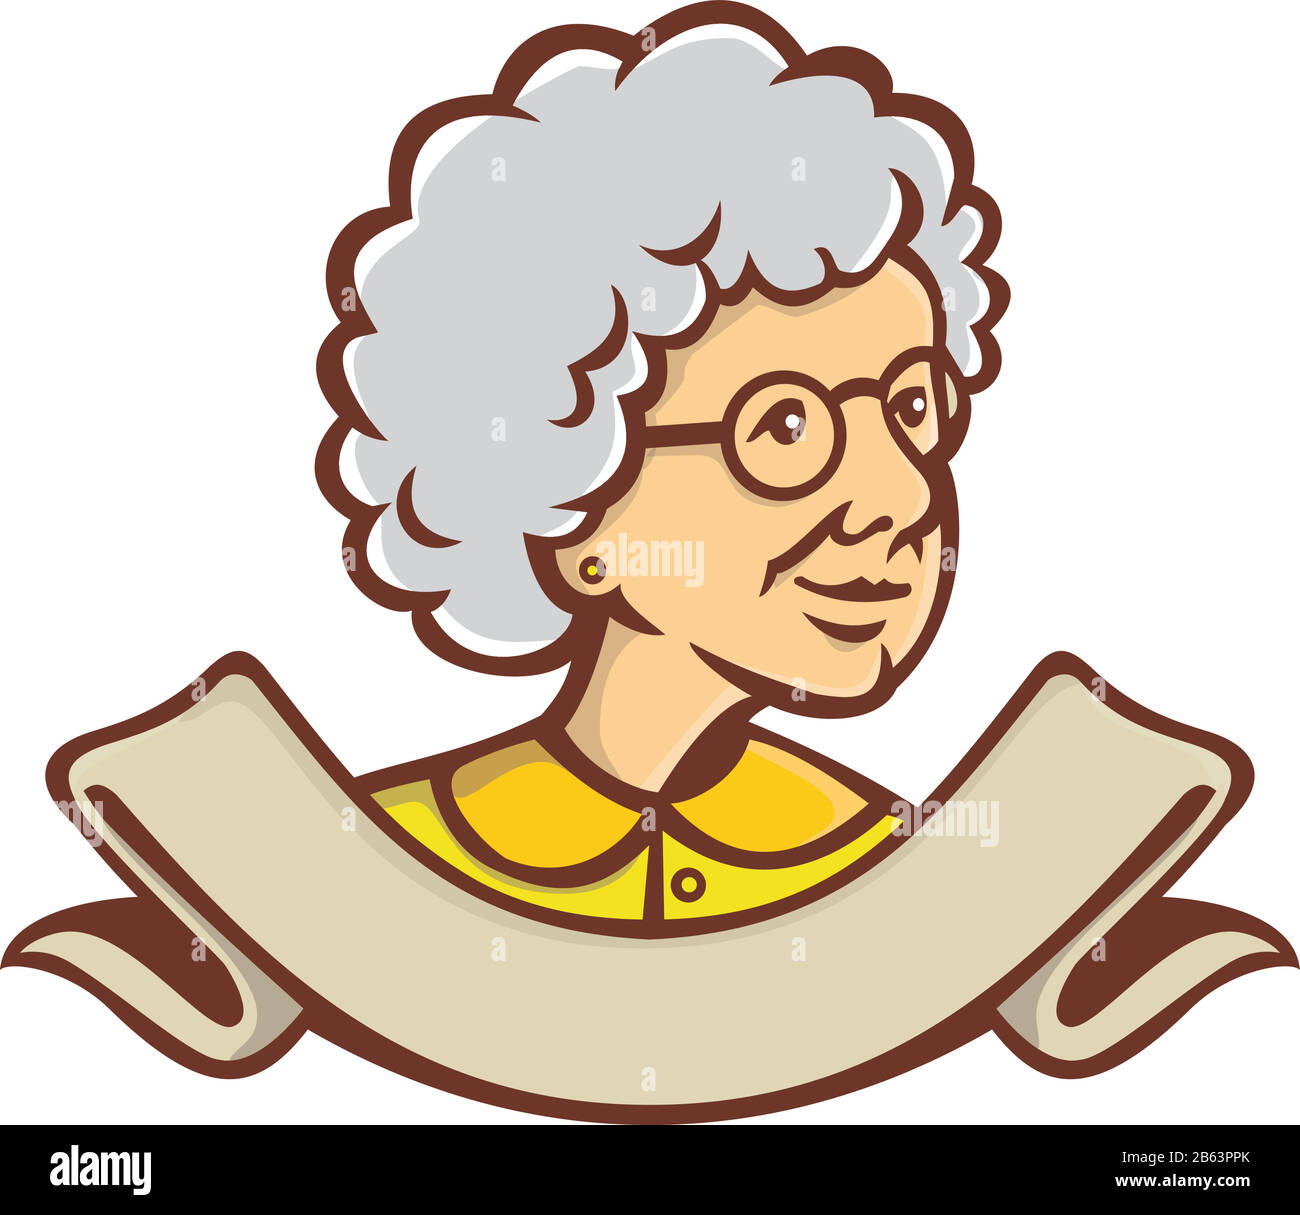 Style rétro illustration de buste d'une grand-mère, de la granny, de la nanny ou d'une femme adulte senior regardant à côté avec ruban au bas sur le dos isolé Illustration de Vecteur